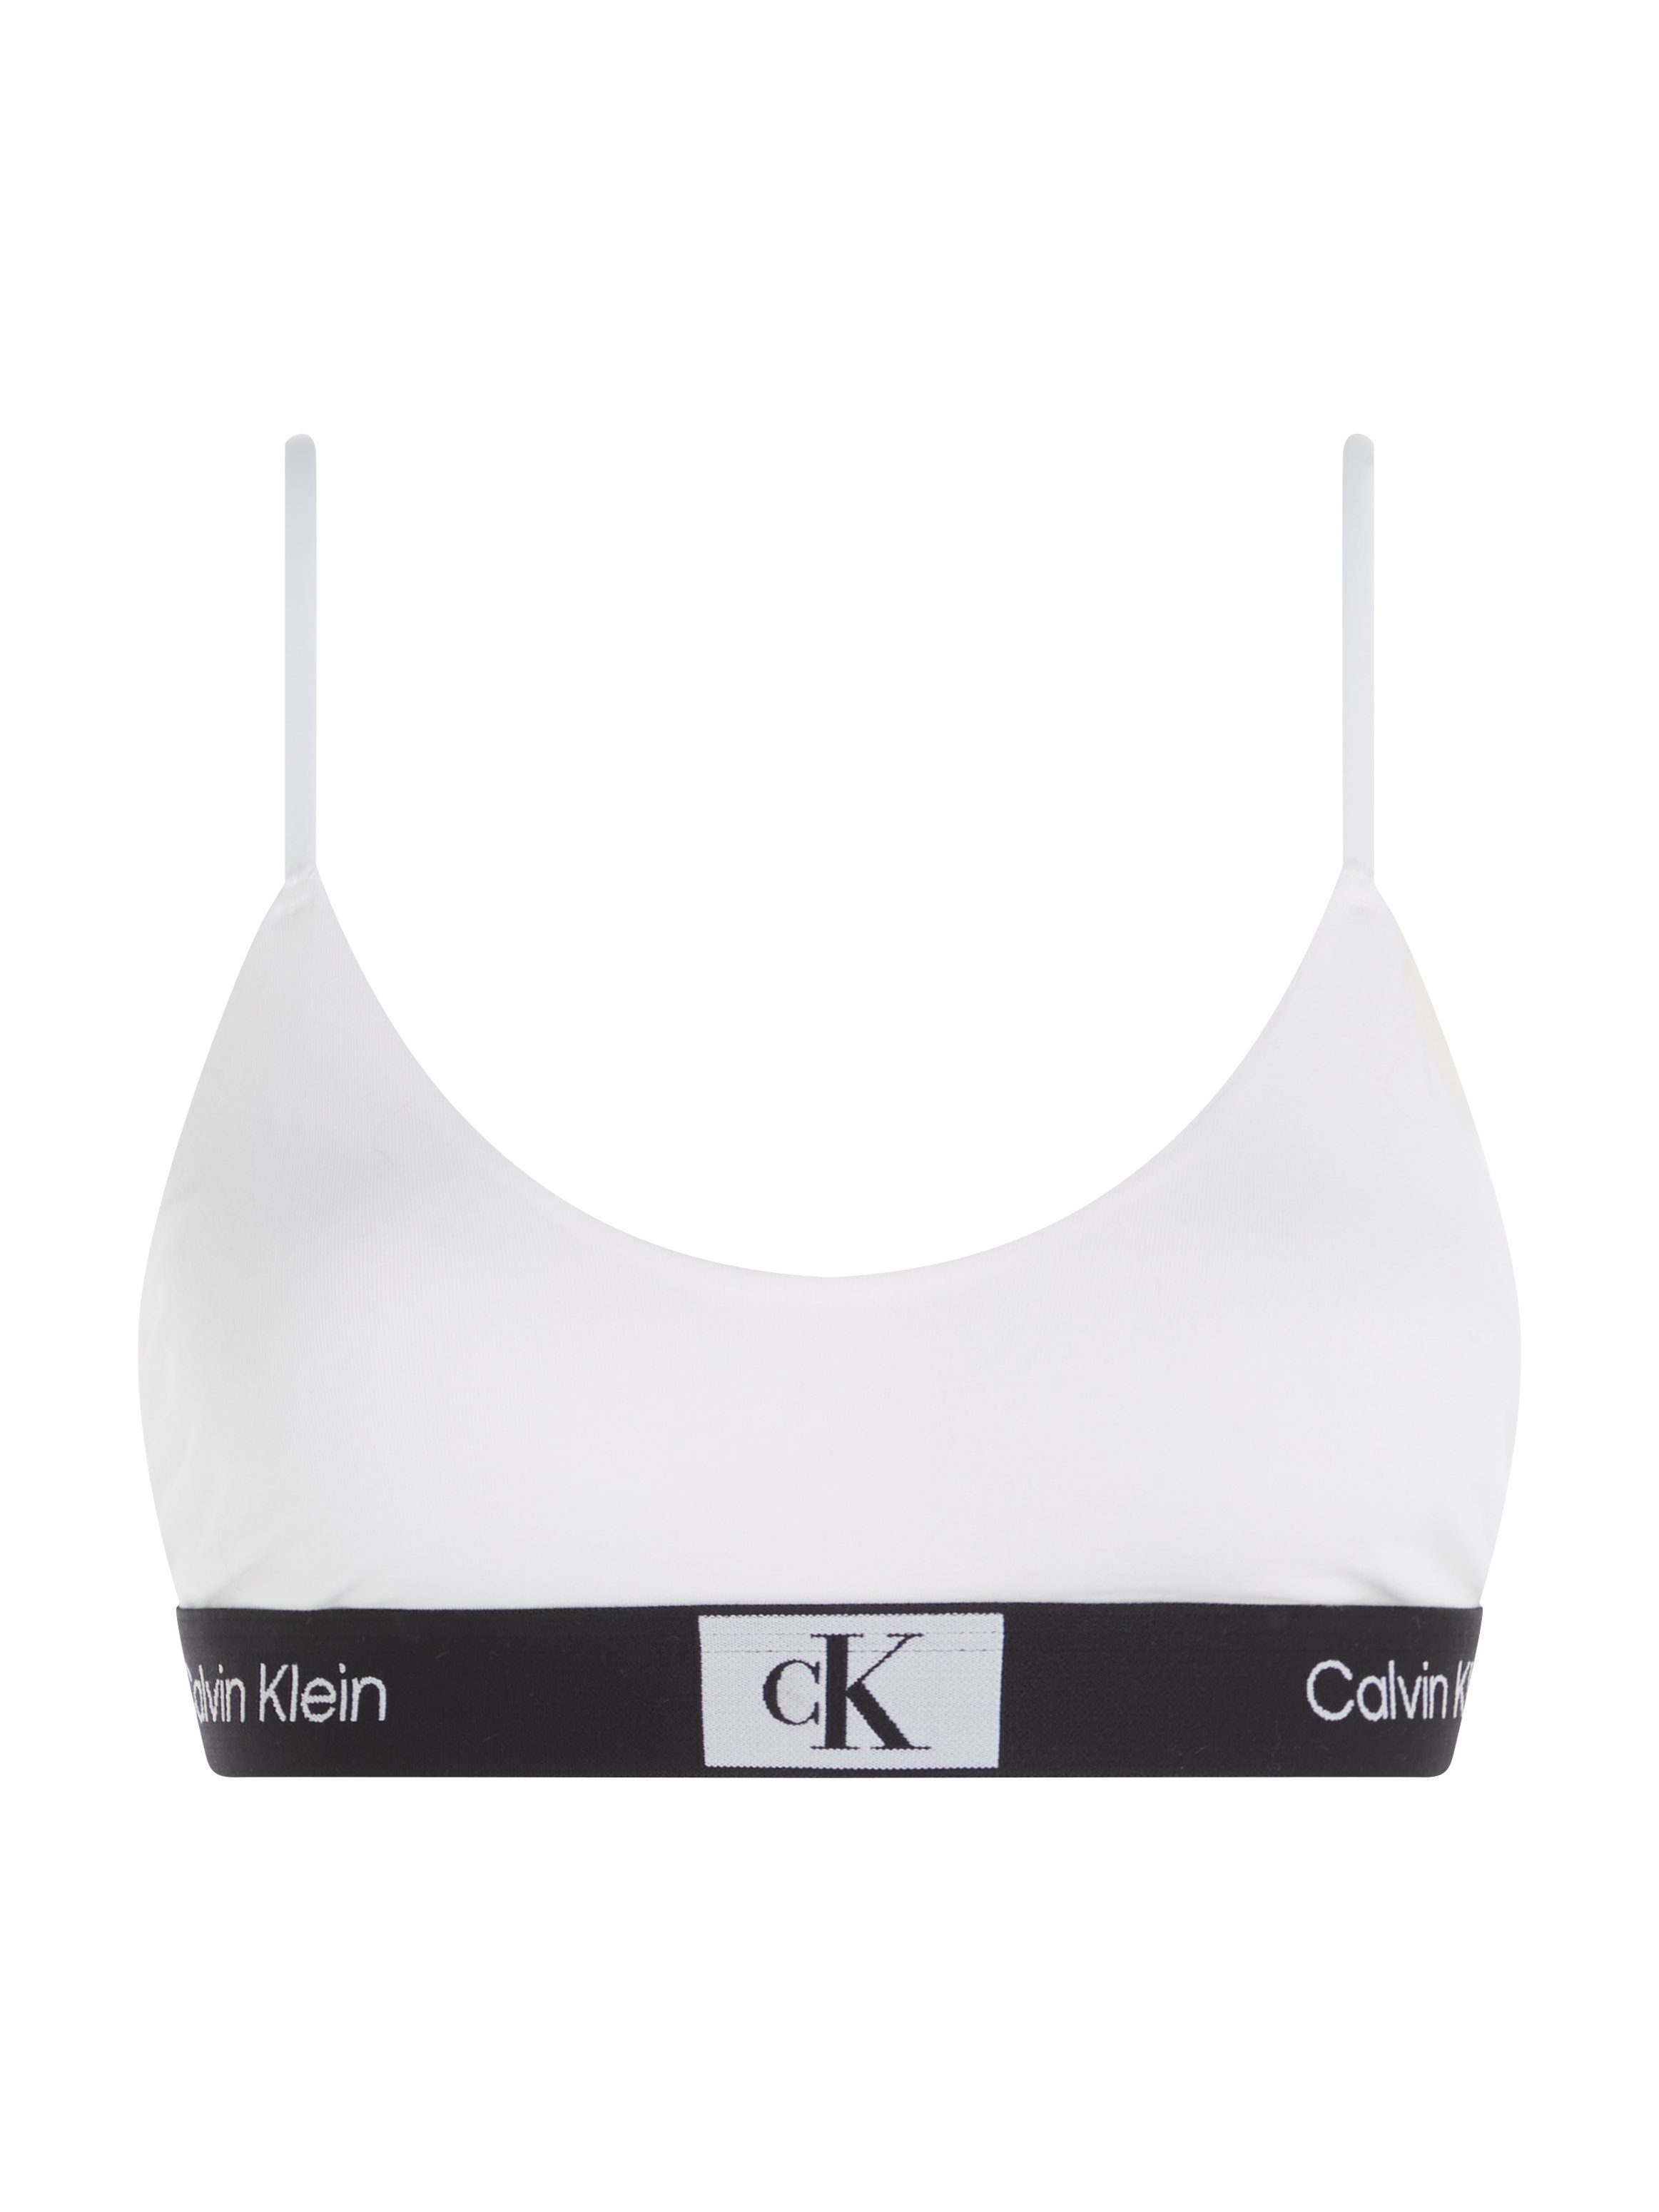 BRALETTE Underwear Bralette-BH mit UNLINED Klein Calvin Alloverprint WHITE